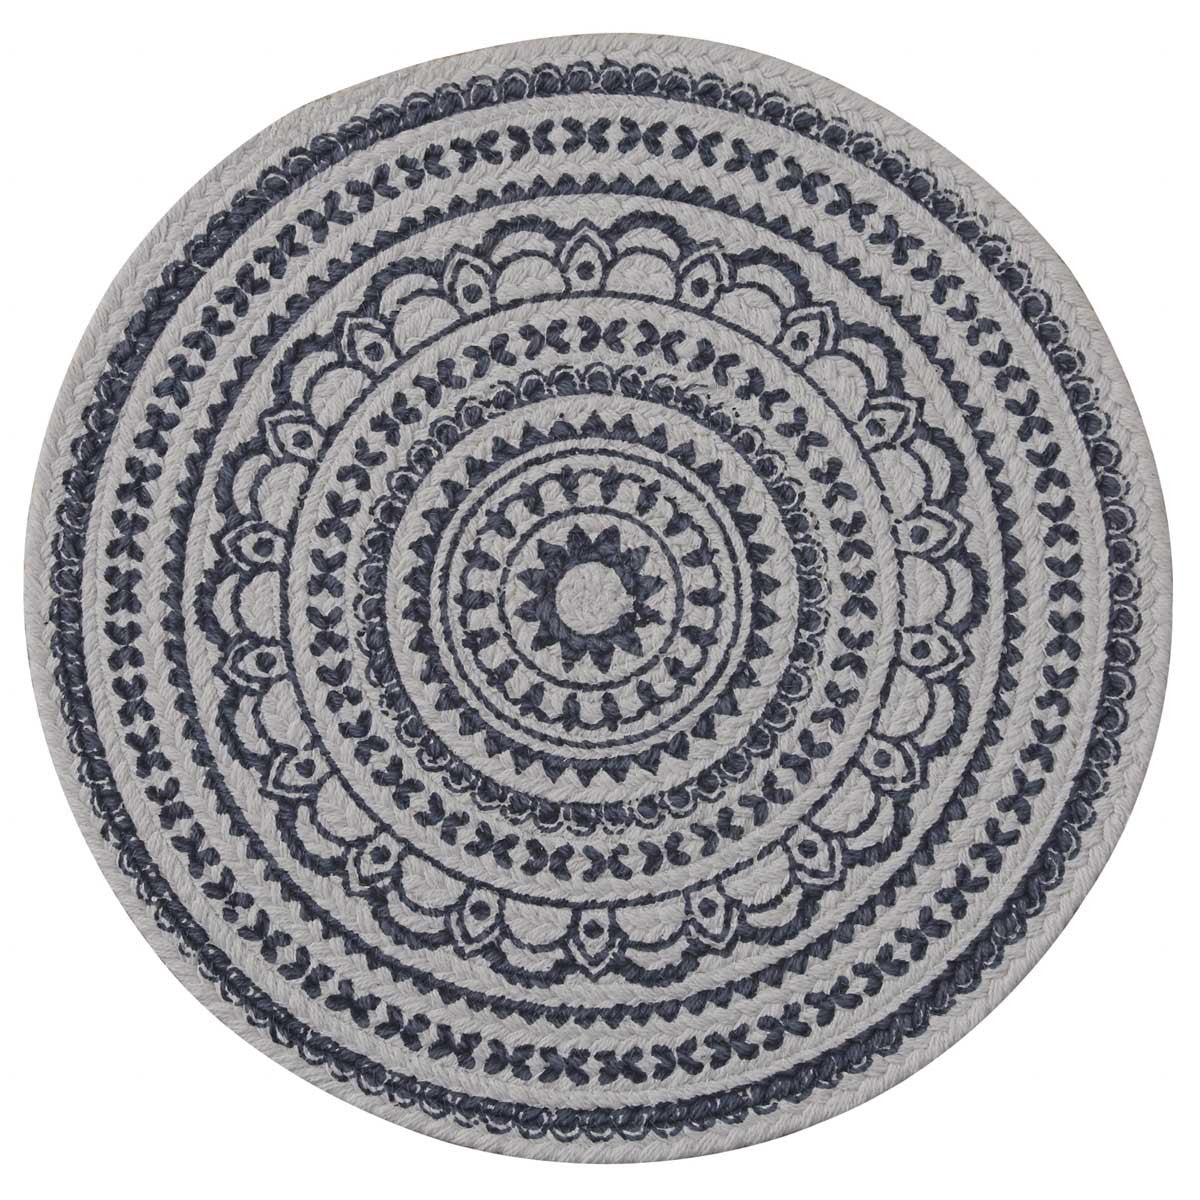 Zuri Medallion Printed Round Placemat - Navy